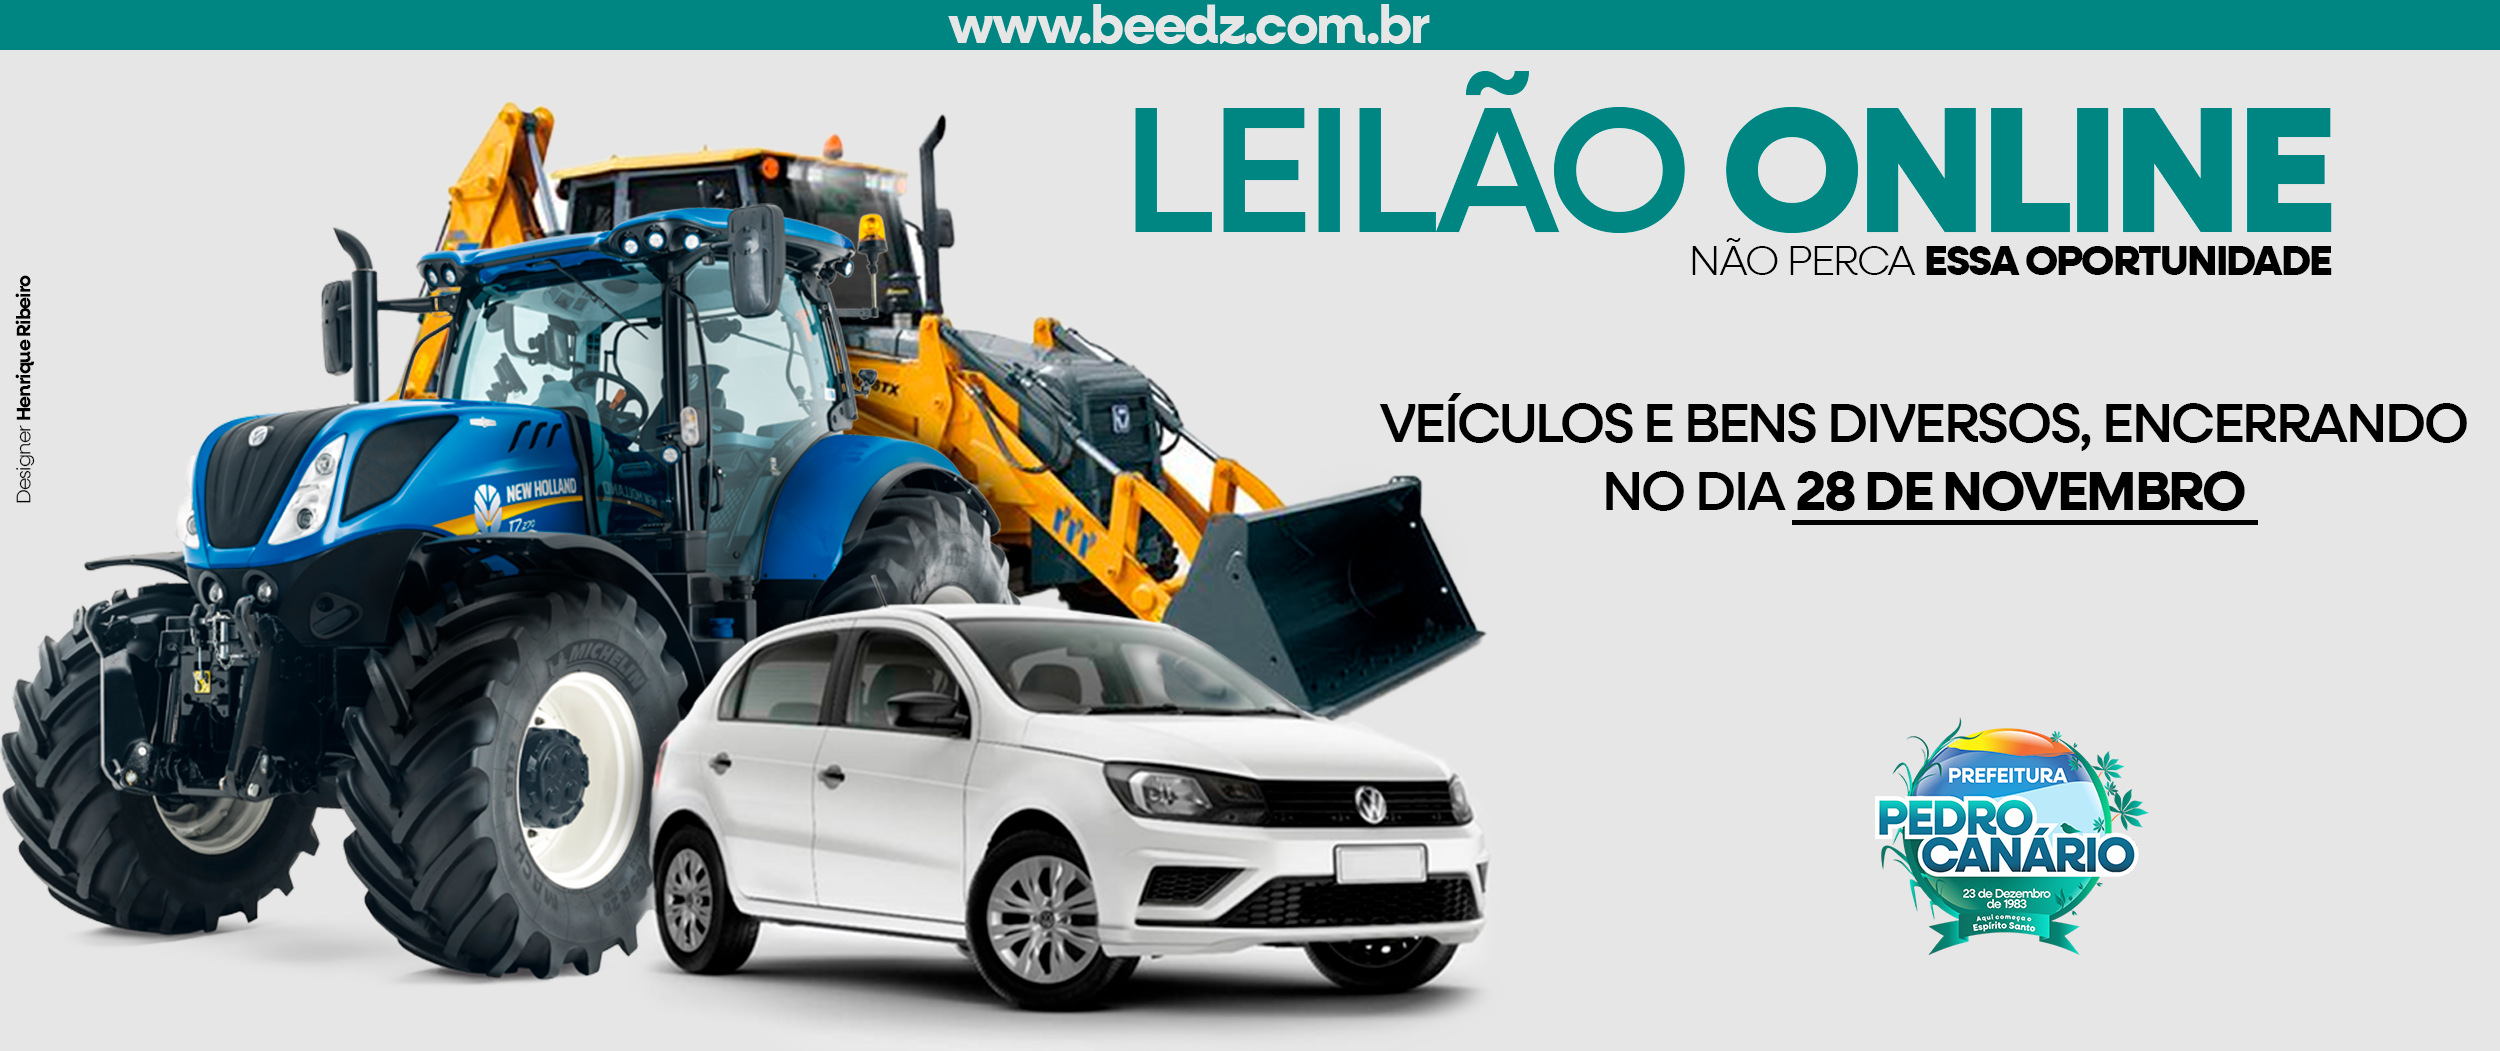 NOTÍCIA: Leilão Online da Prefeitura de Pedro Canário: Oportunidade Econômica até 28/11